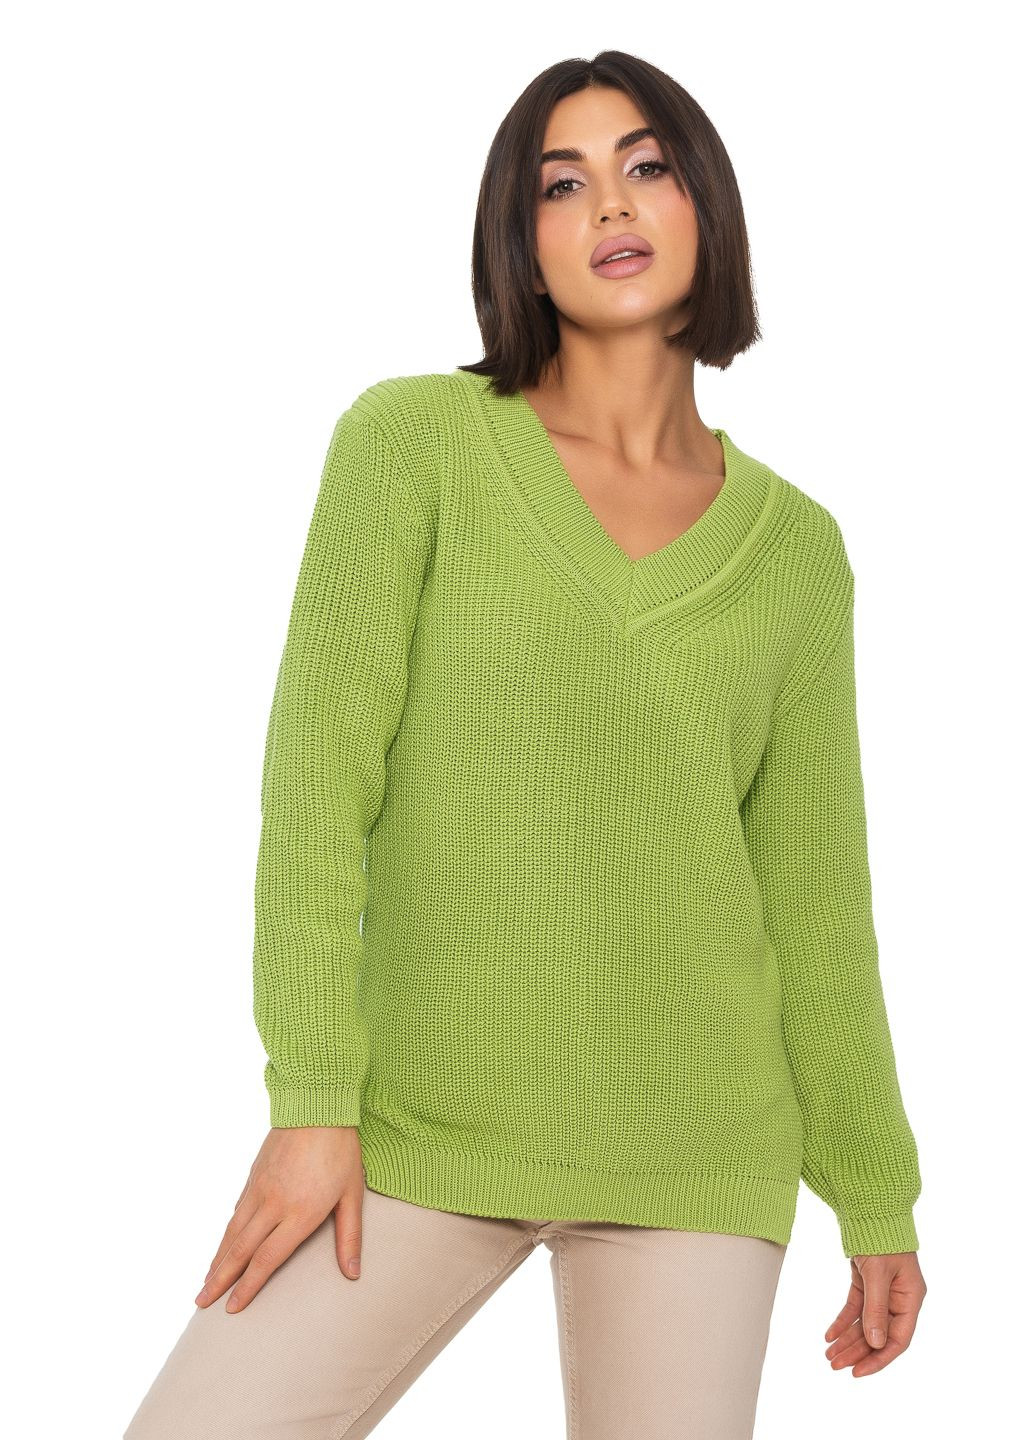 Салатовый женский хлопковый свитер с v-образным воротником SVTR